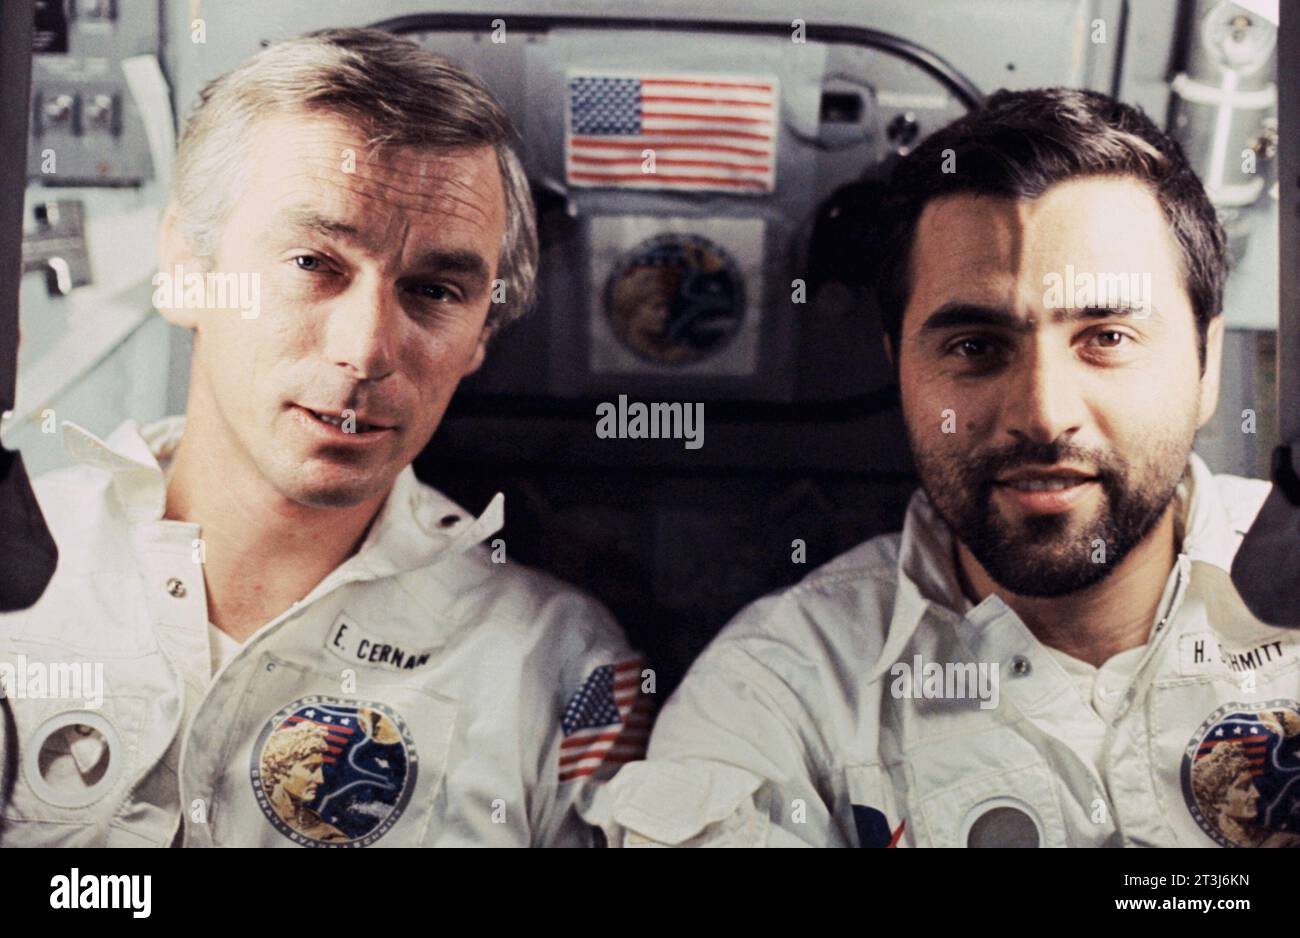 Cernan und Schmitt, Astronaut Eugene A. Cernan (links) und Wissenschaftler Harrison H. 'Jack' Schmitt werden von der dritten Crew an Bord des Raumschiffs Apollo 17 während der letzten Mondlandungsmission im Apollo-Programm der NASA fotografiert. Stockfoto